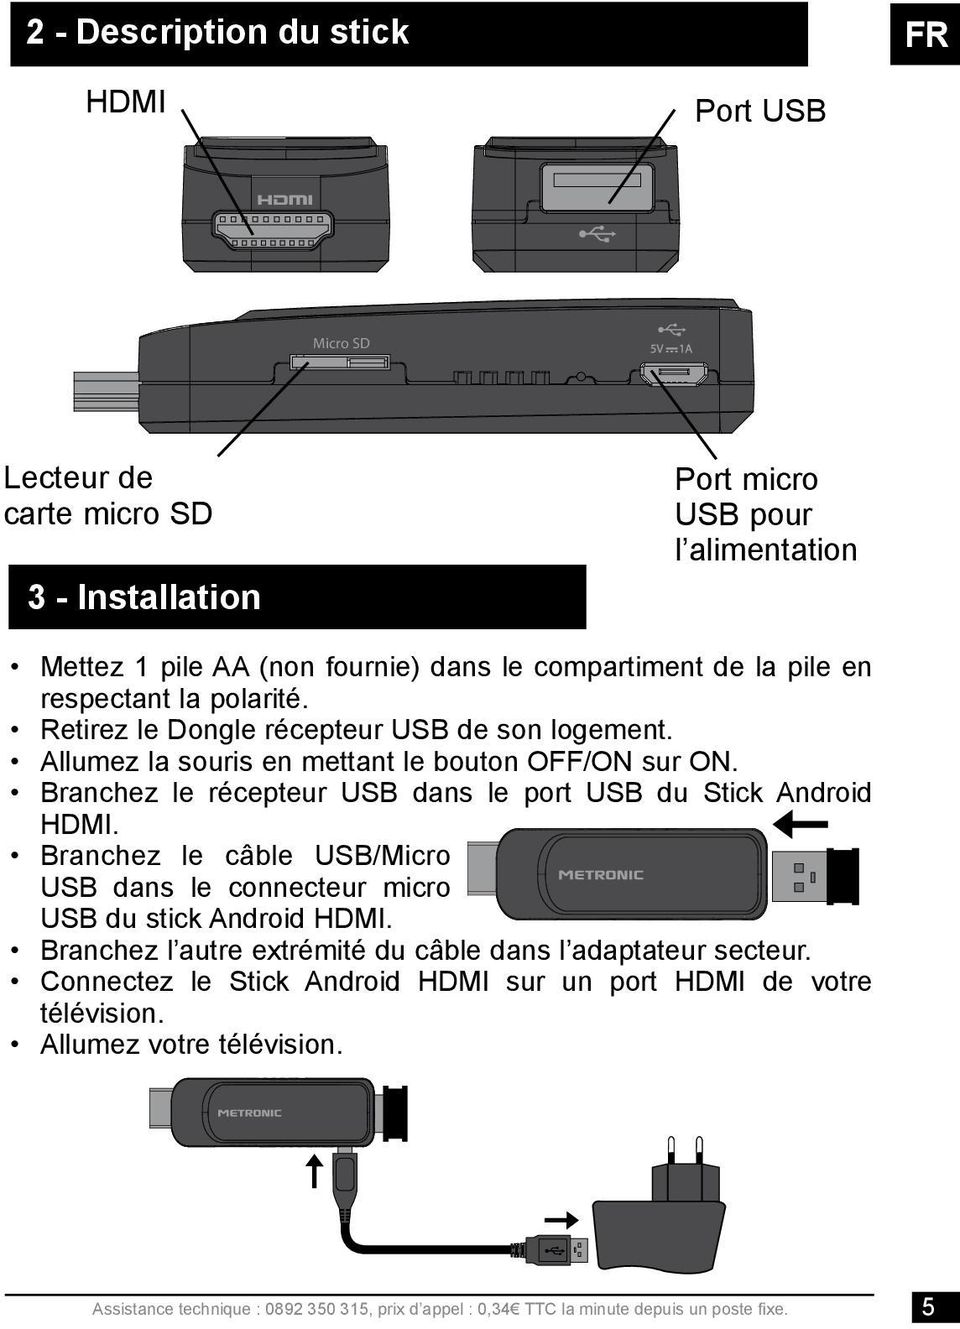 Branchez le récepteur USB dans le port USB du Stick Android HDMI. Branchez le câble USB/Micro USB dans le connecteur micro USB du stick Android HDMI.